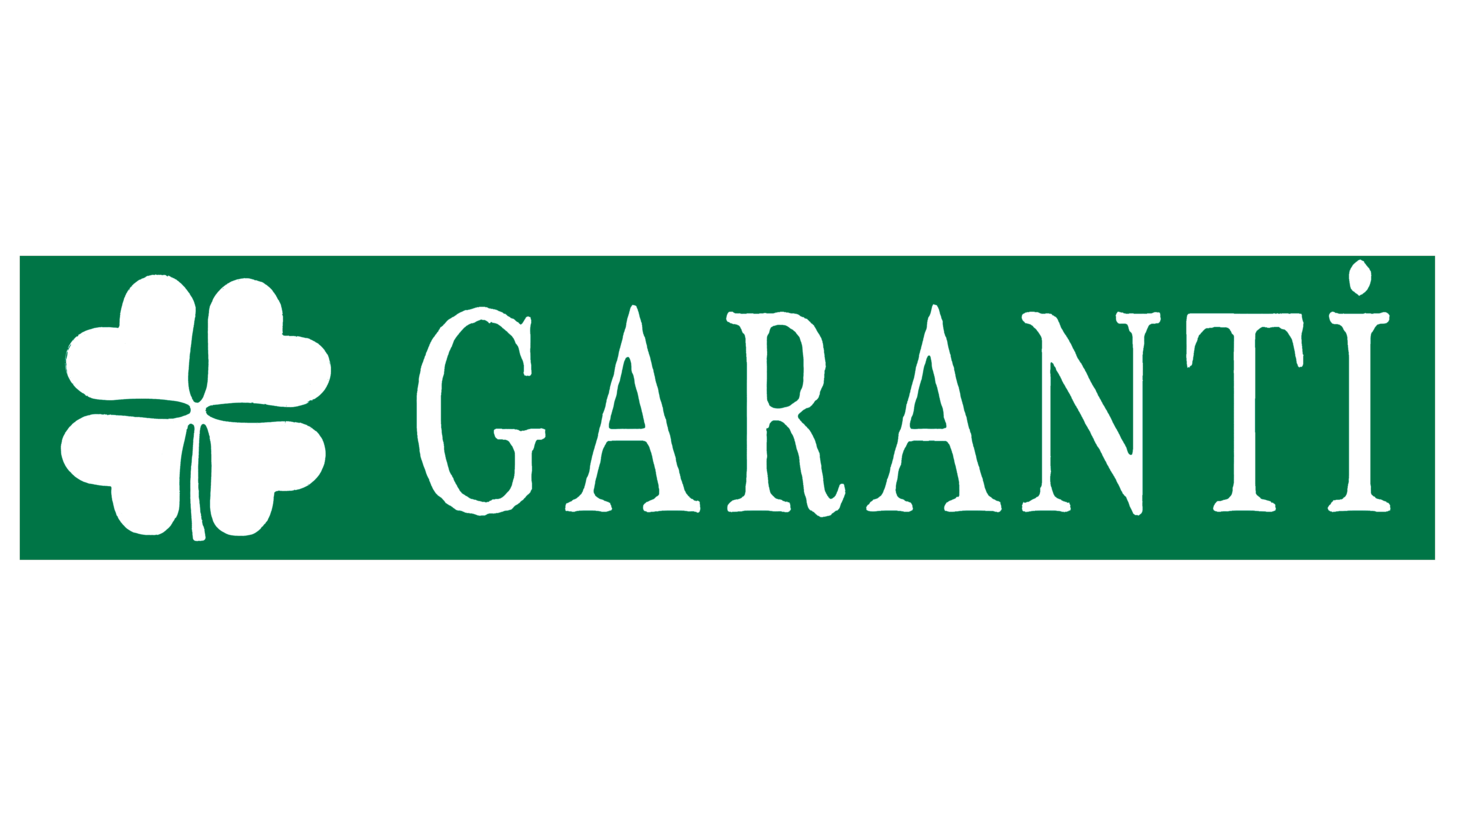 Garanti bank sign 1990s 2001